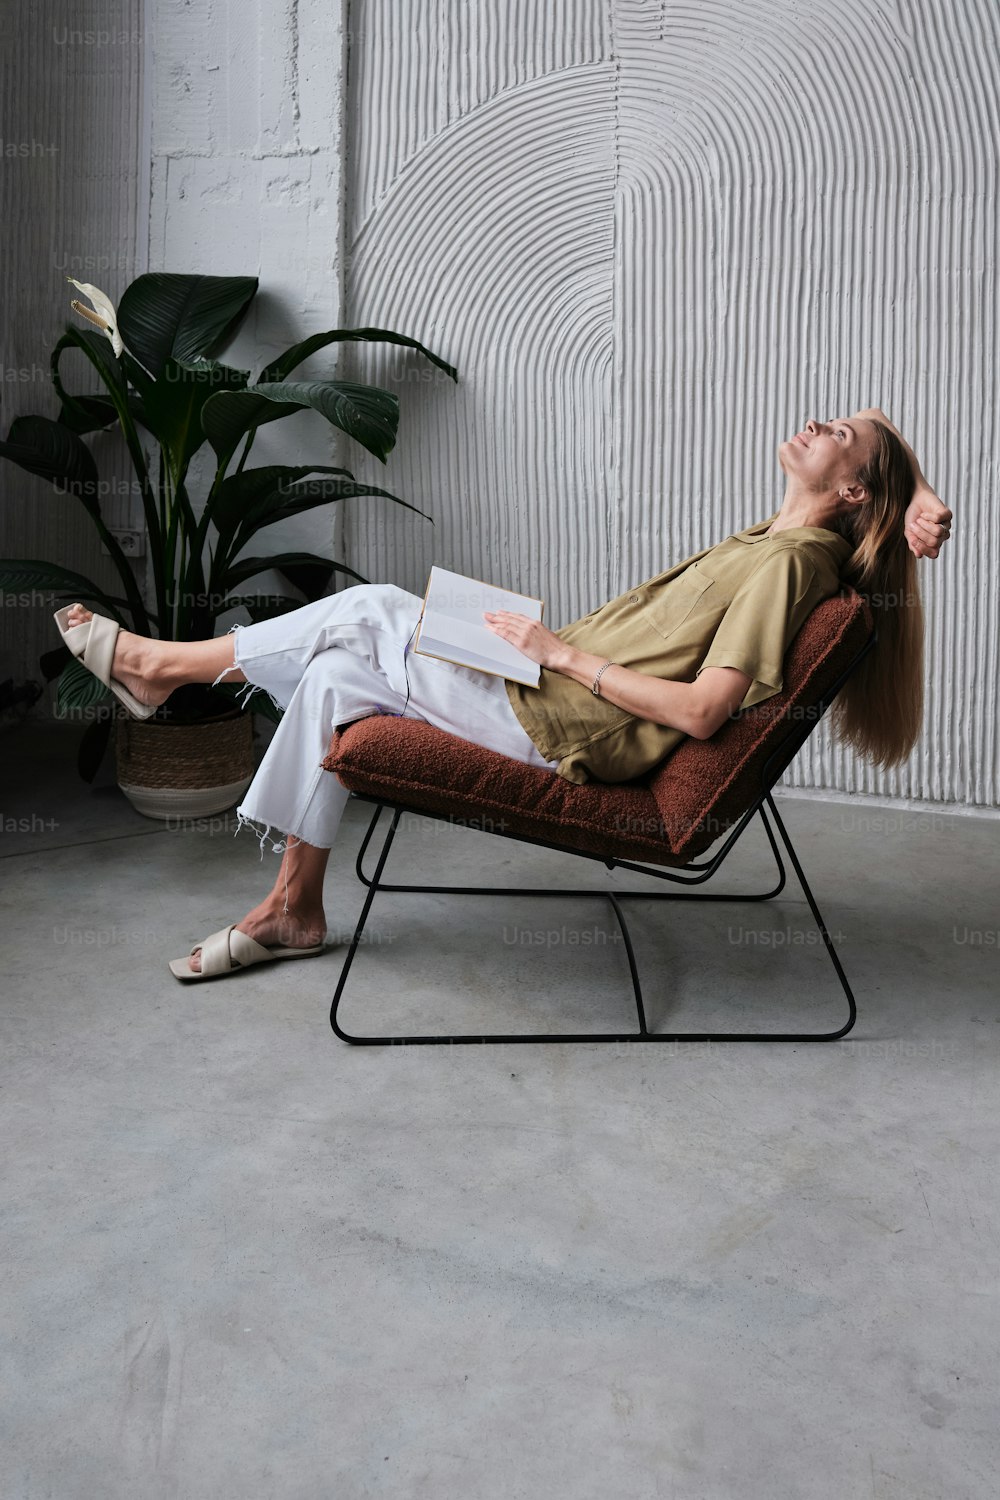 Une femme assise à une table en train de fabriquer un morceau de papier  photo – Vêtements Photo sur Unsplash